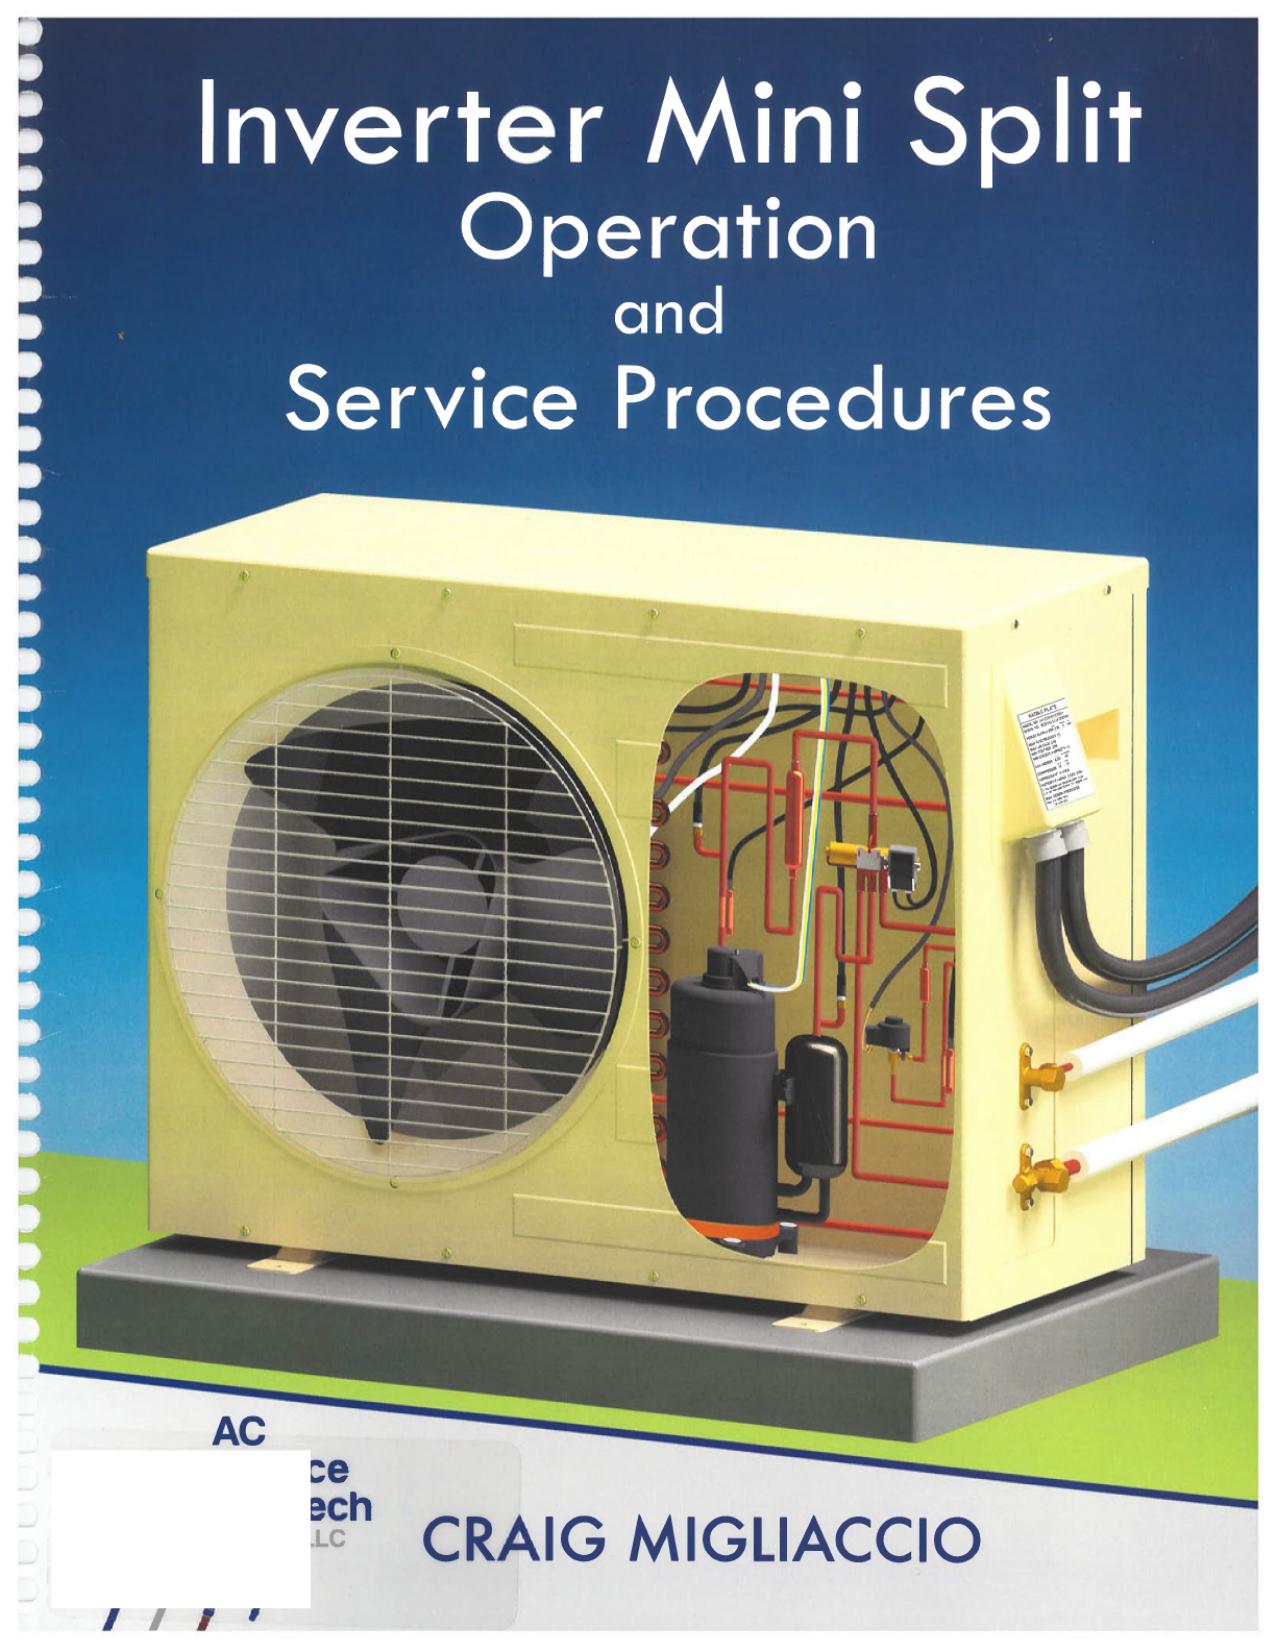 Inverter Mini Split Operation and Service Procedures by Craig Migliaccio